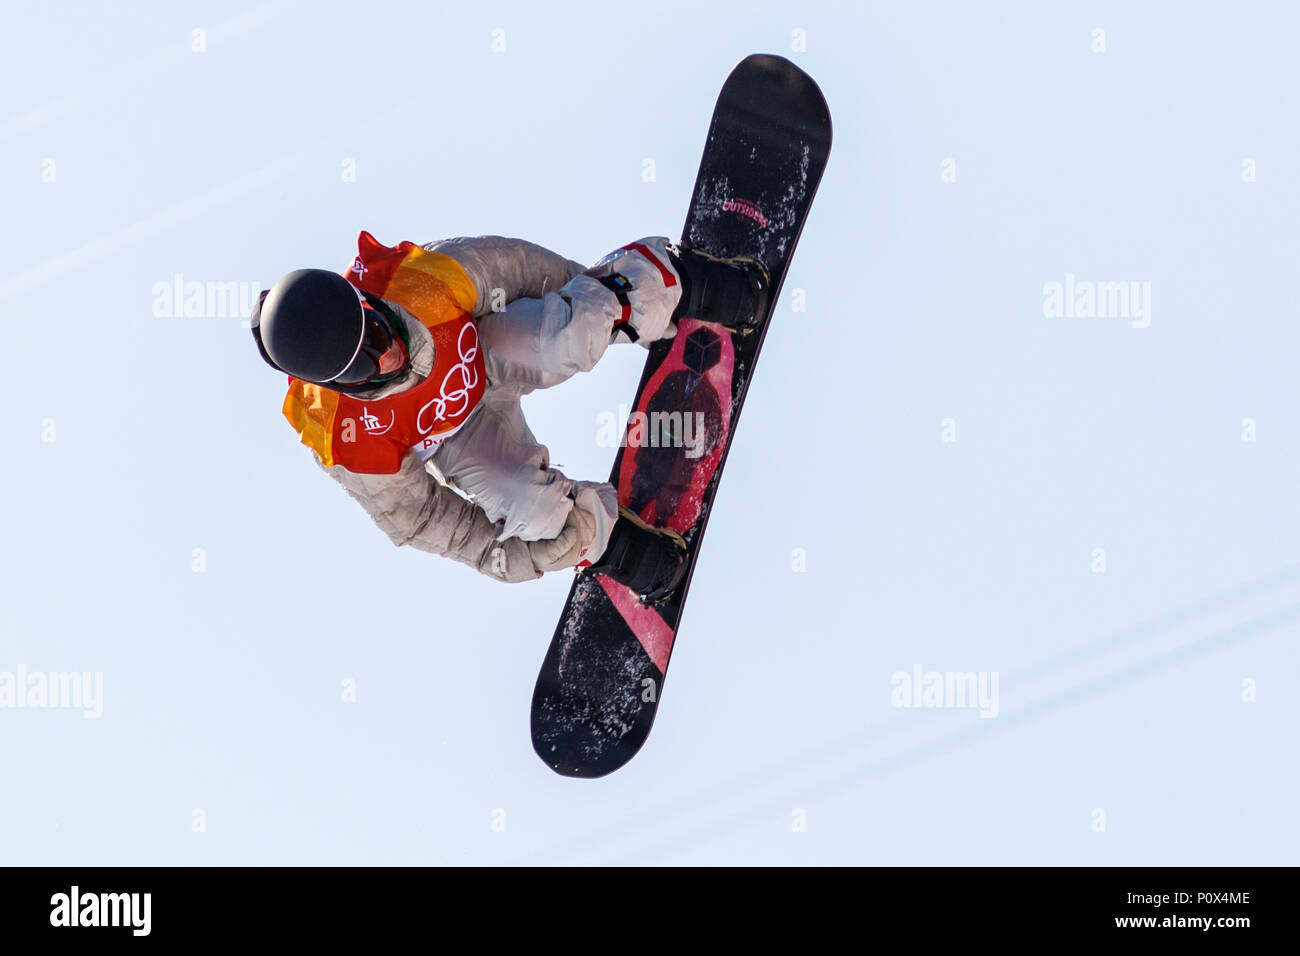 Chase Josey (USA) concorrenti negli uomini della Snowboard Half Pipe qualifiche per i Giochi Olimpici Invernali PyeongChang 2018 Foto Stock